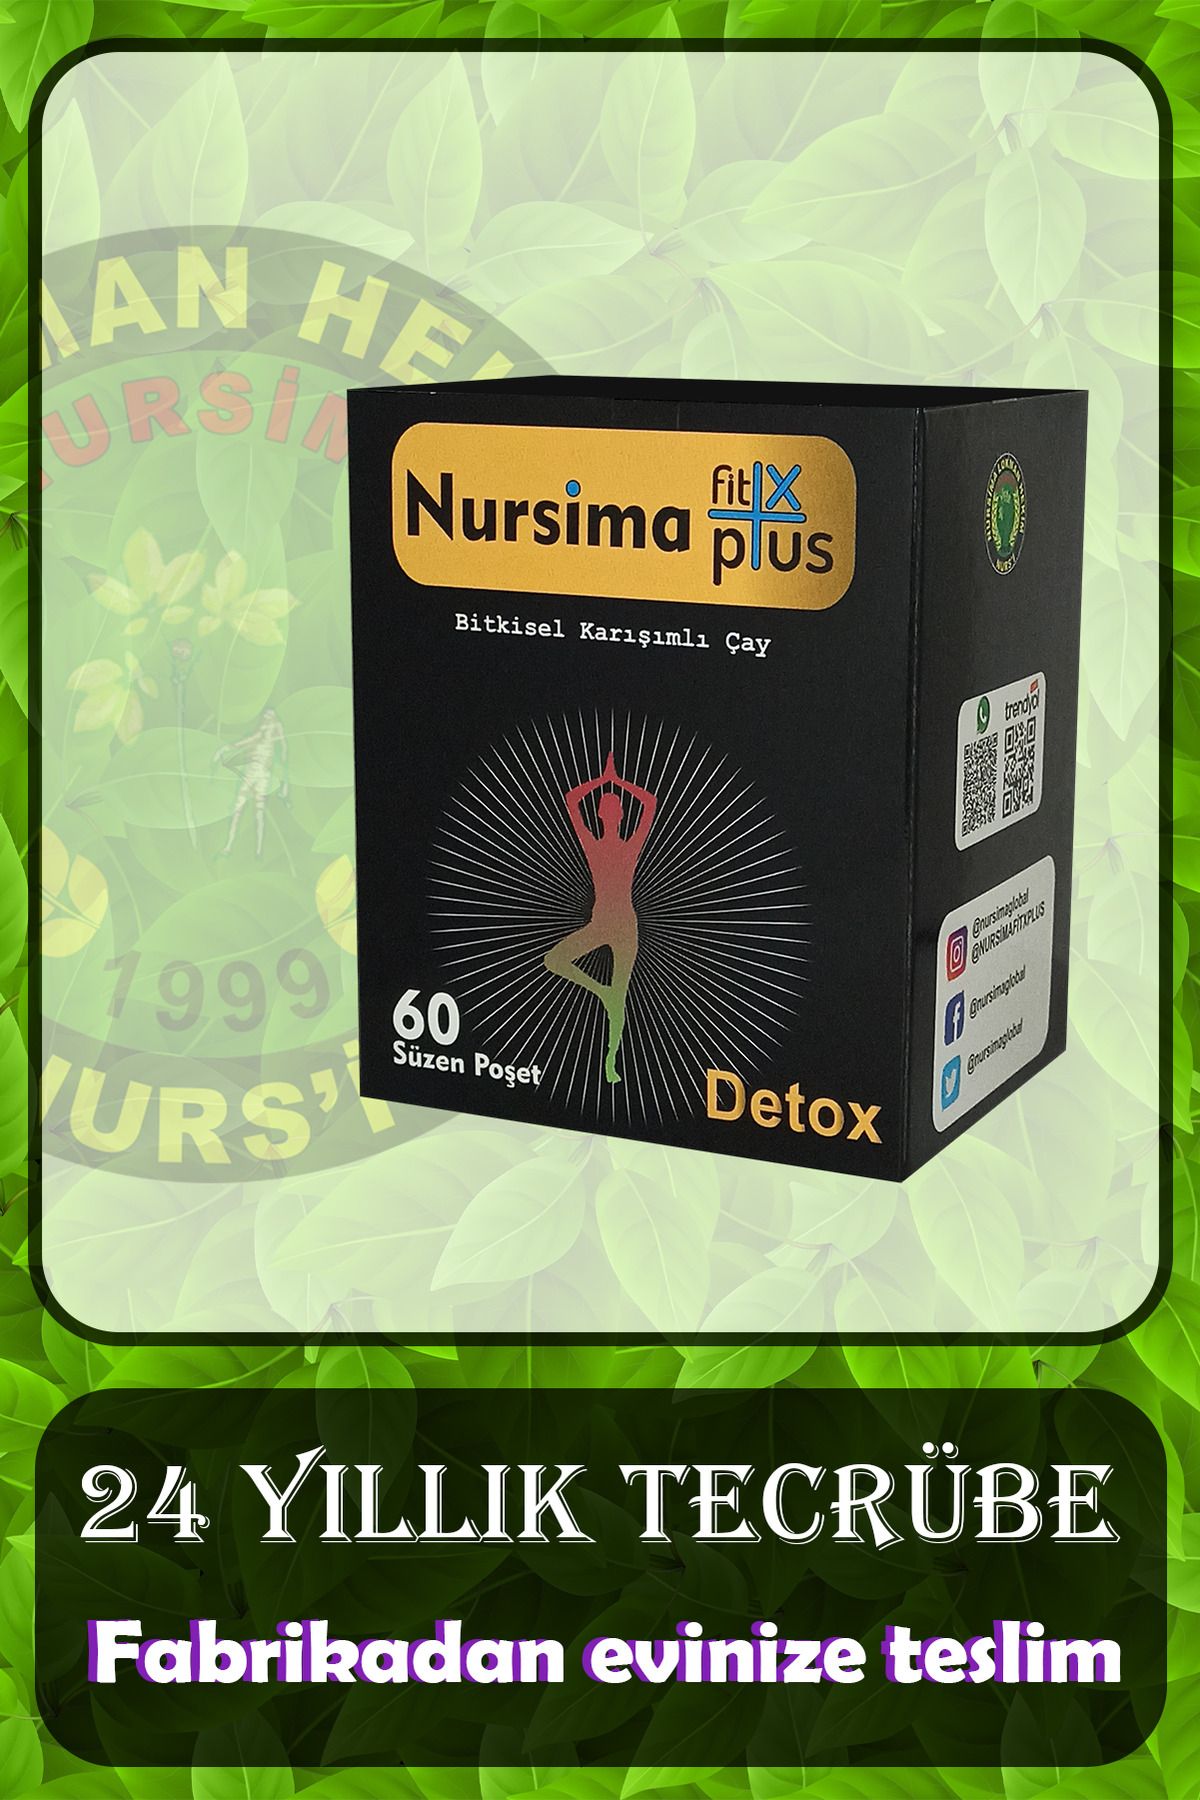 Nursima Fit X Plus Detox Çayı 60 Süzen Poşetli